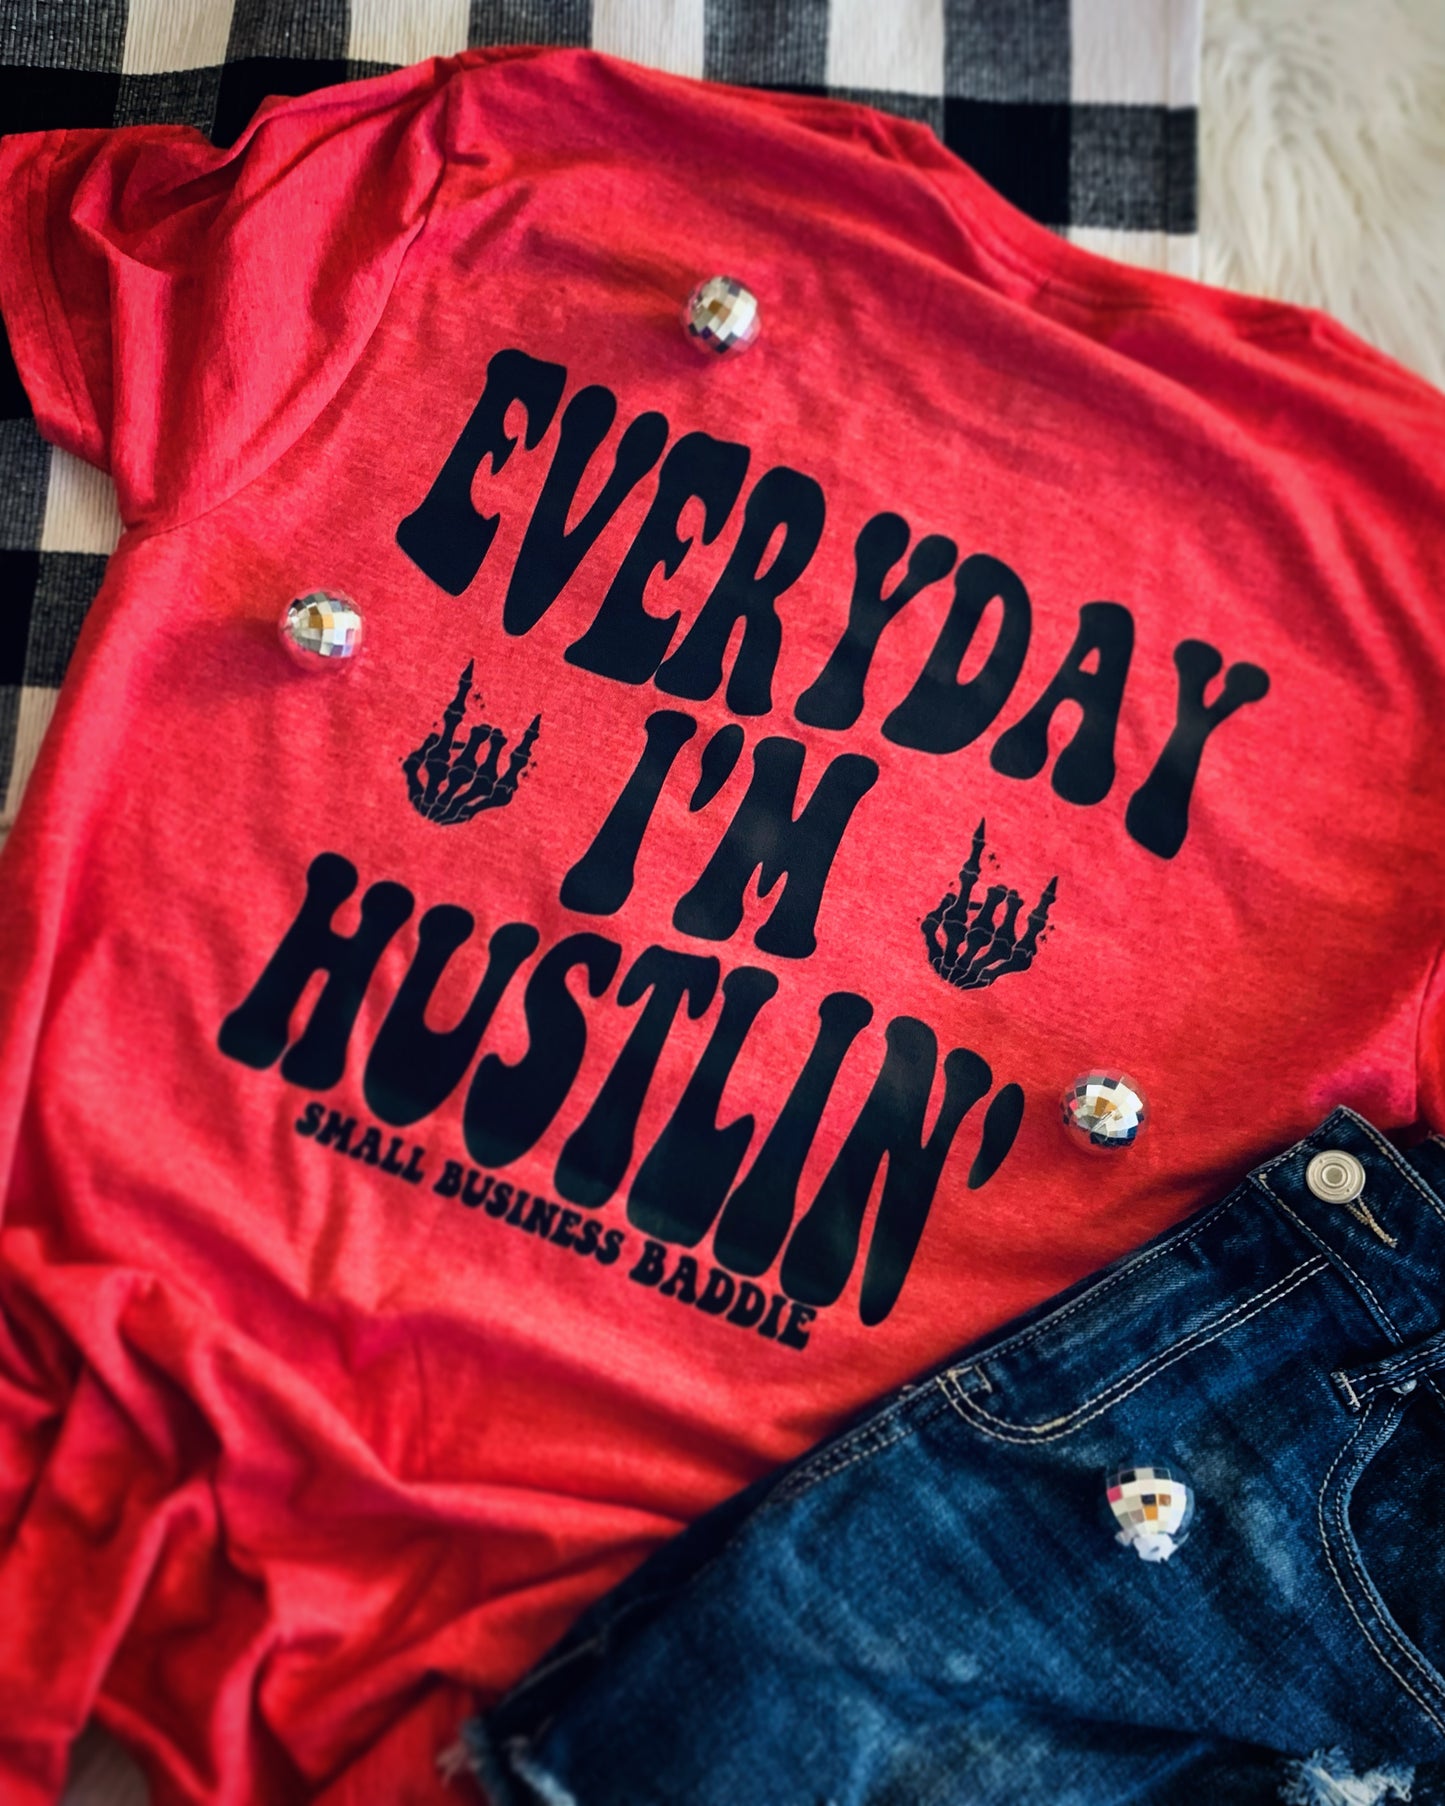 Everyday I’m hustlin